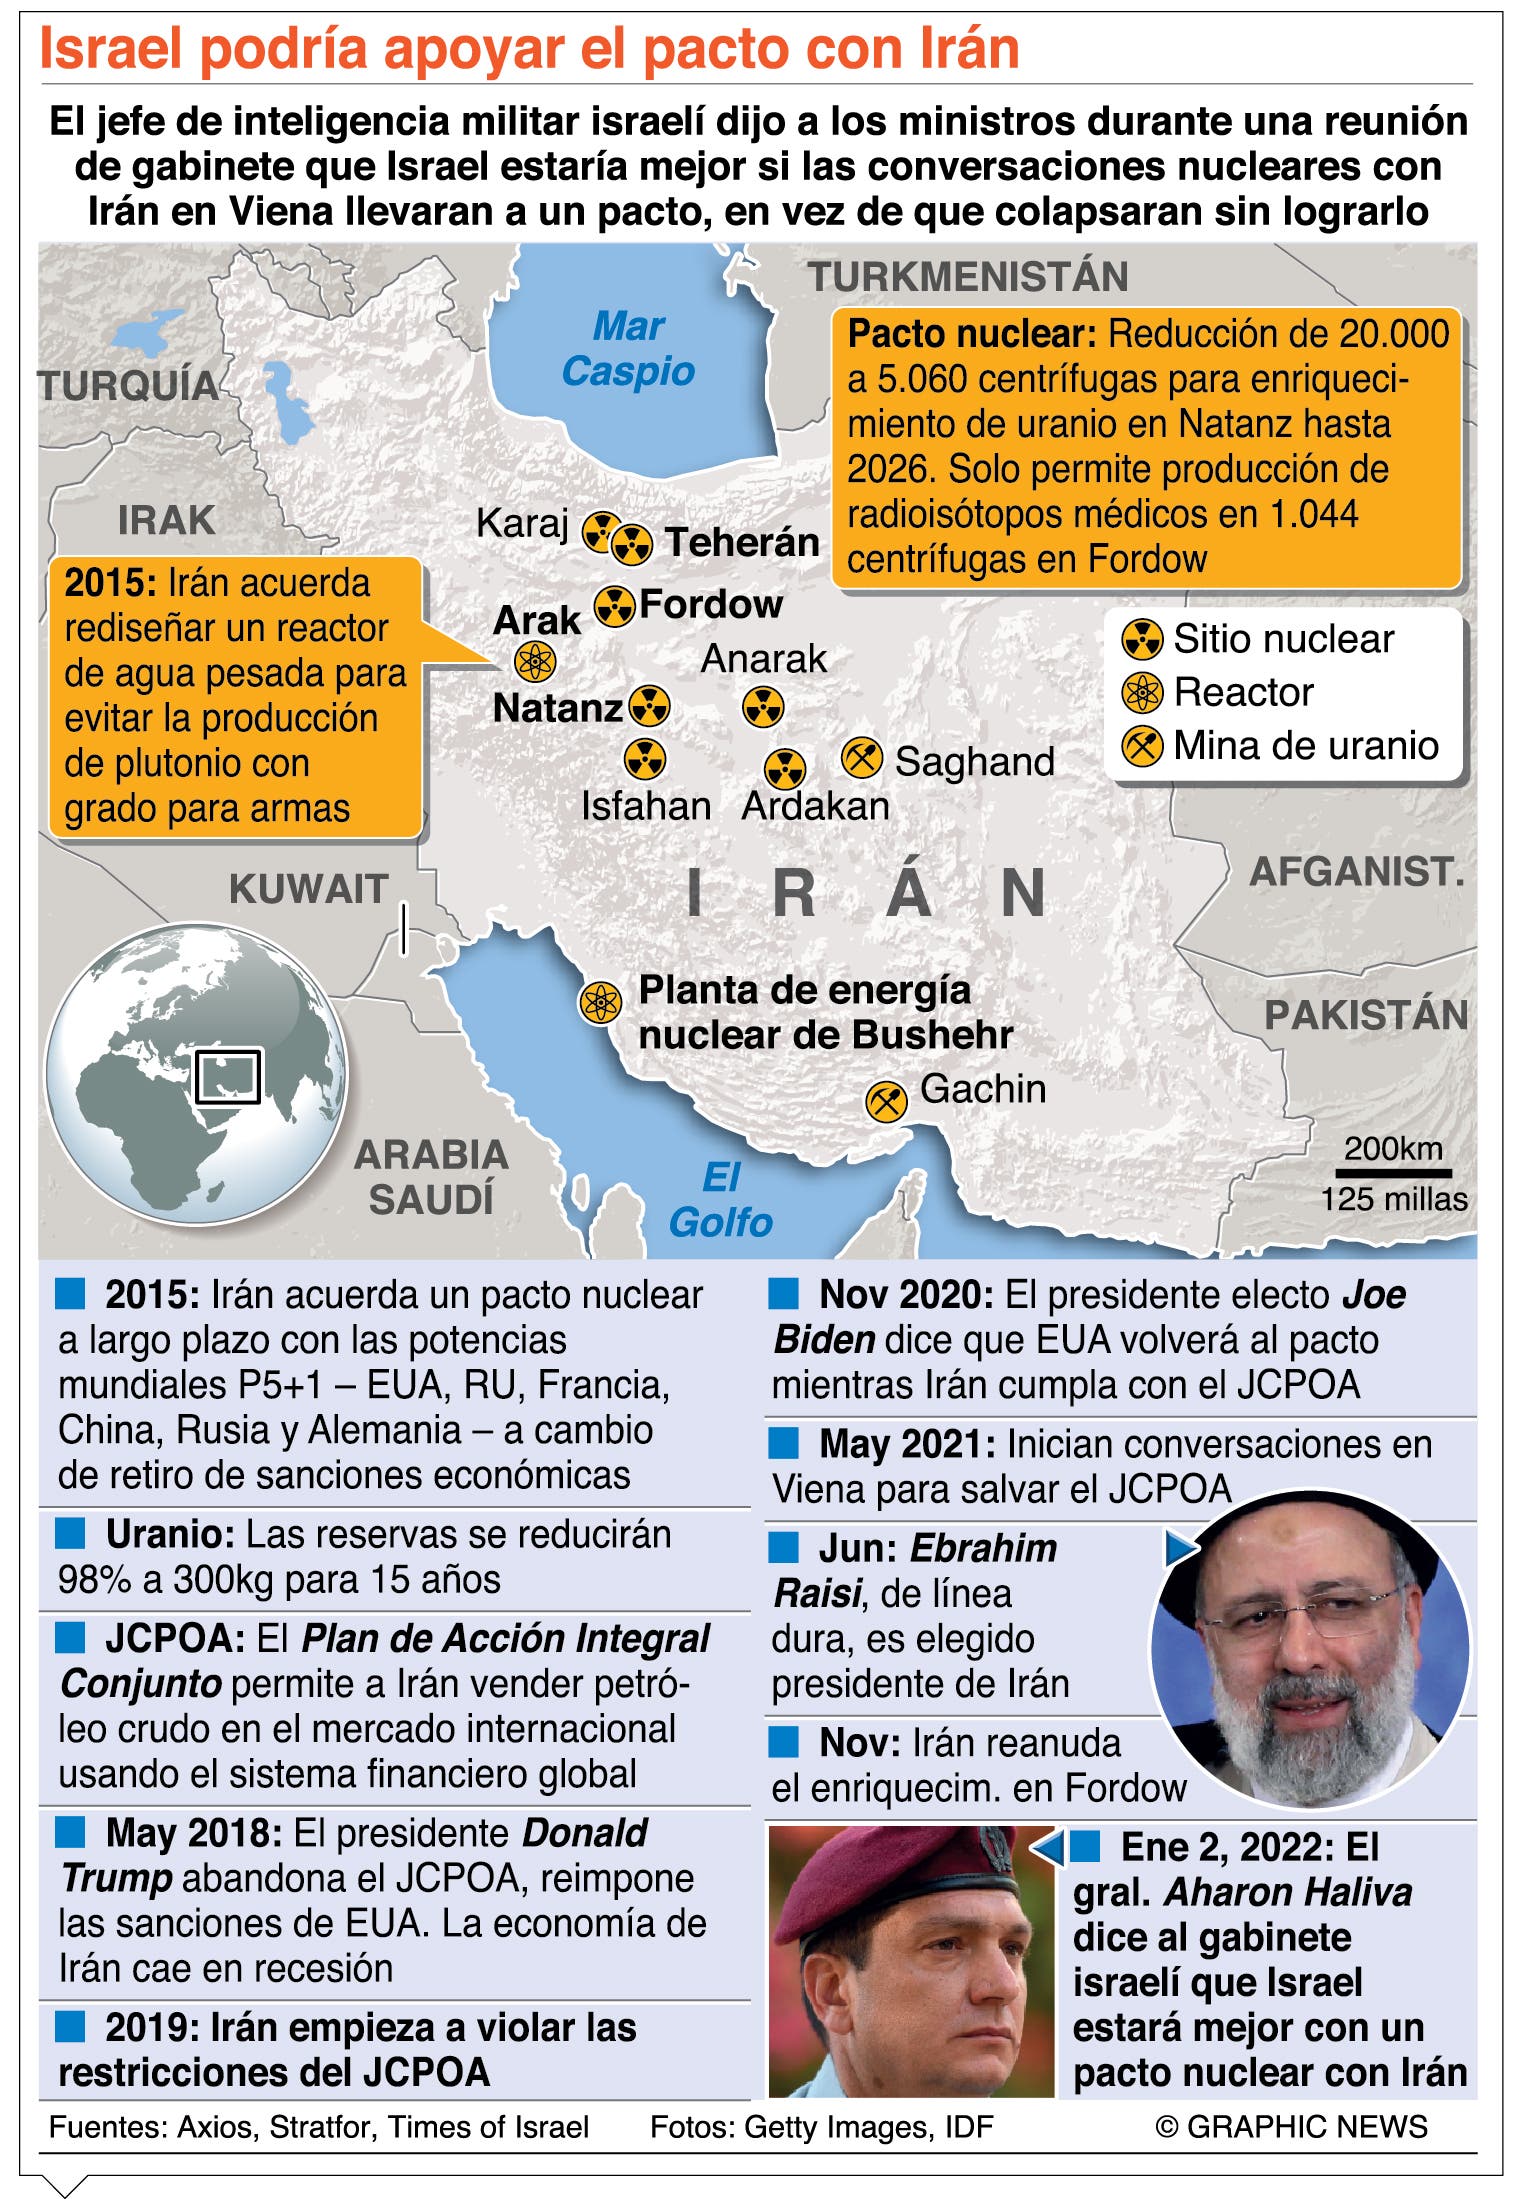 Irán busca más apoyo sobre pacto nuclear